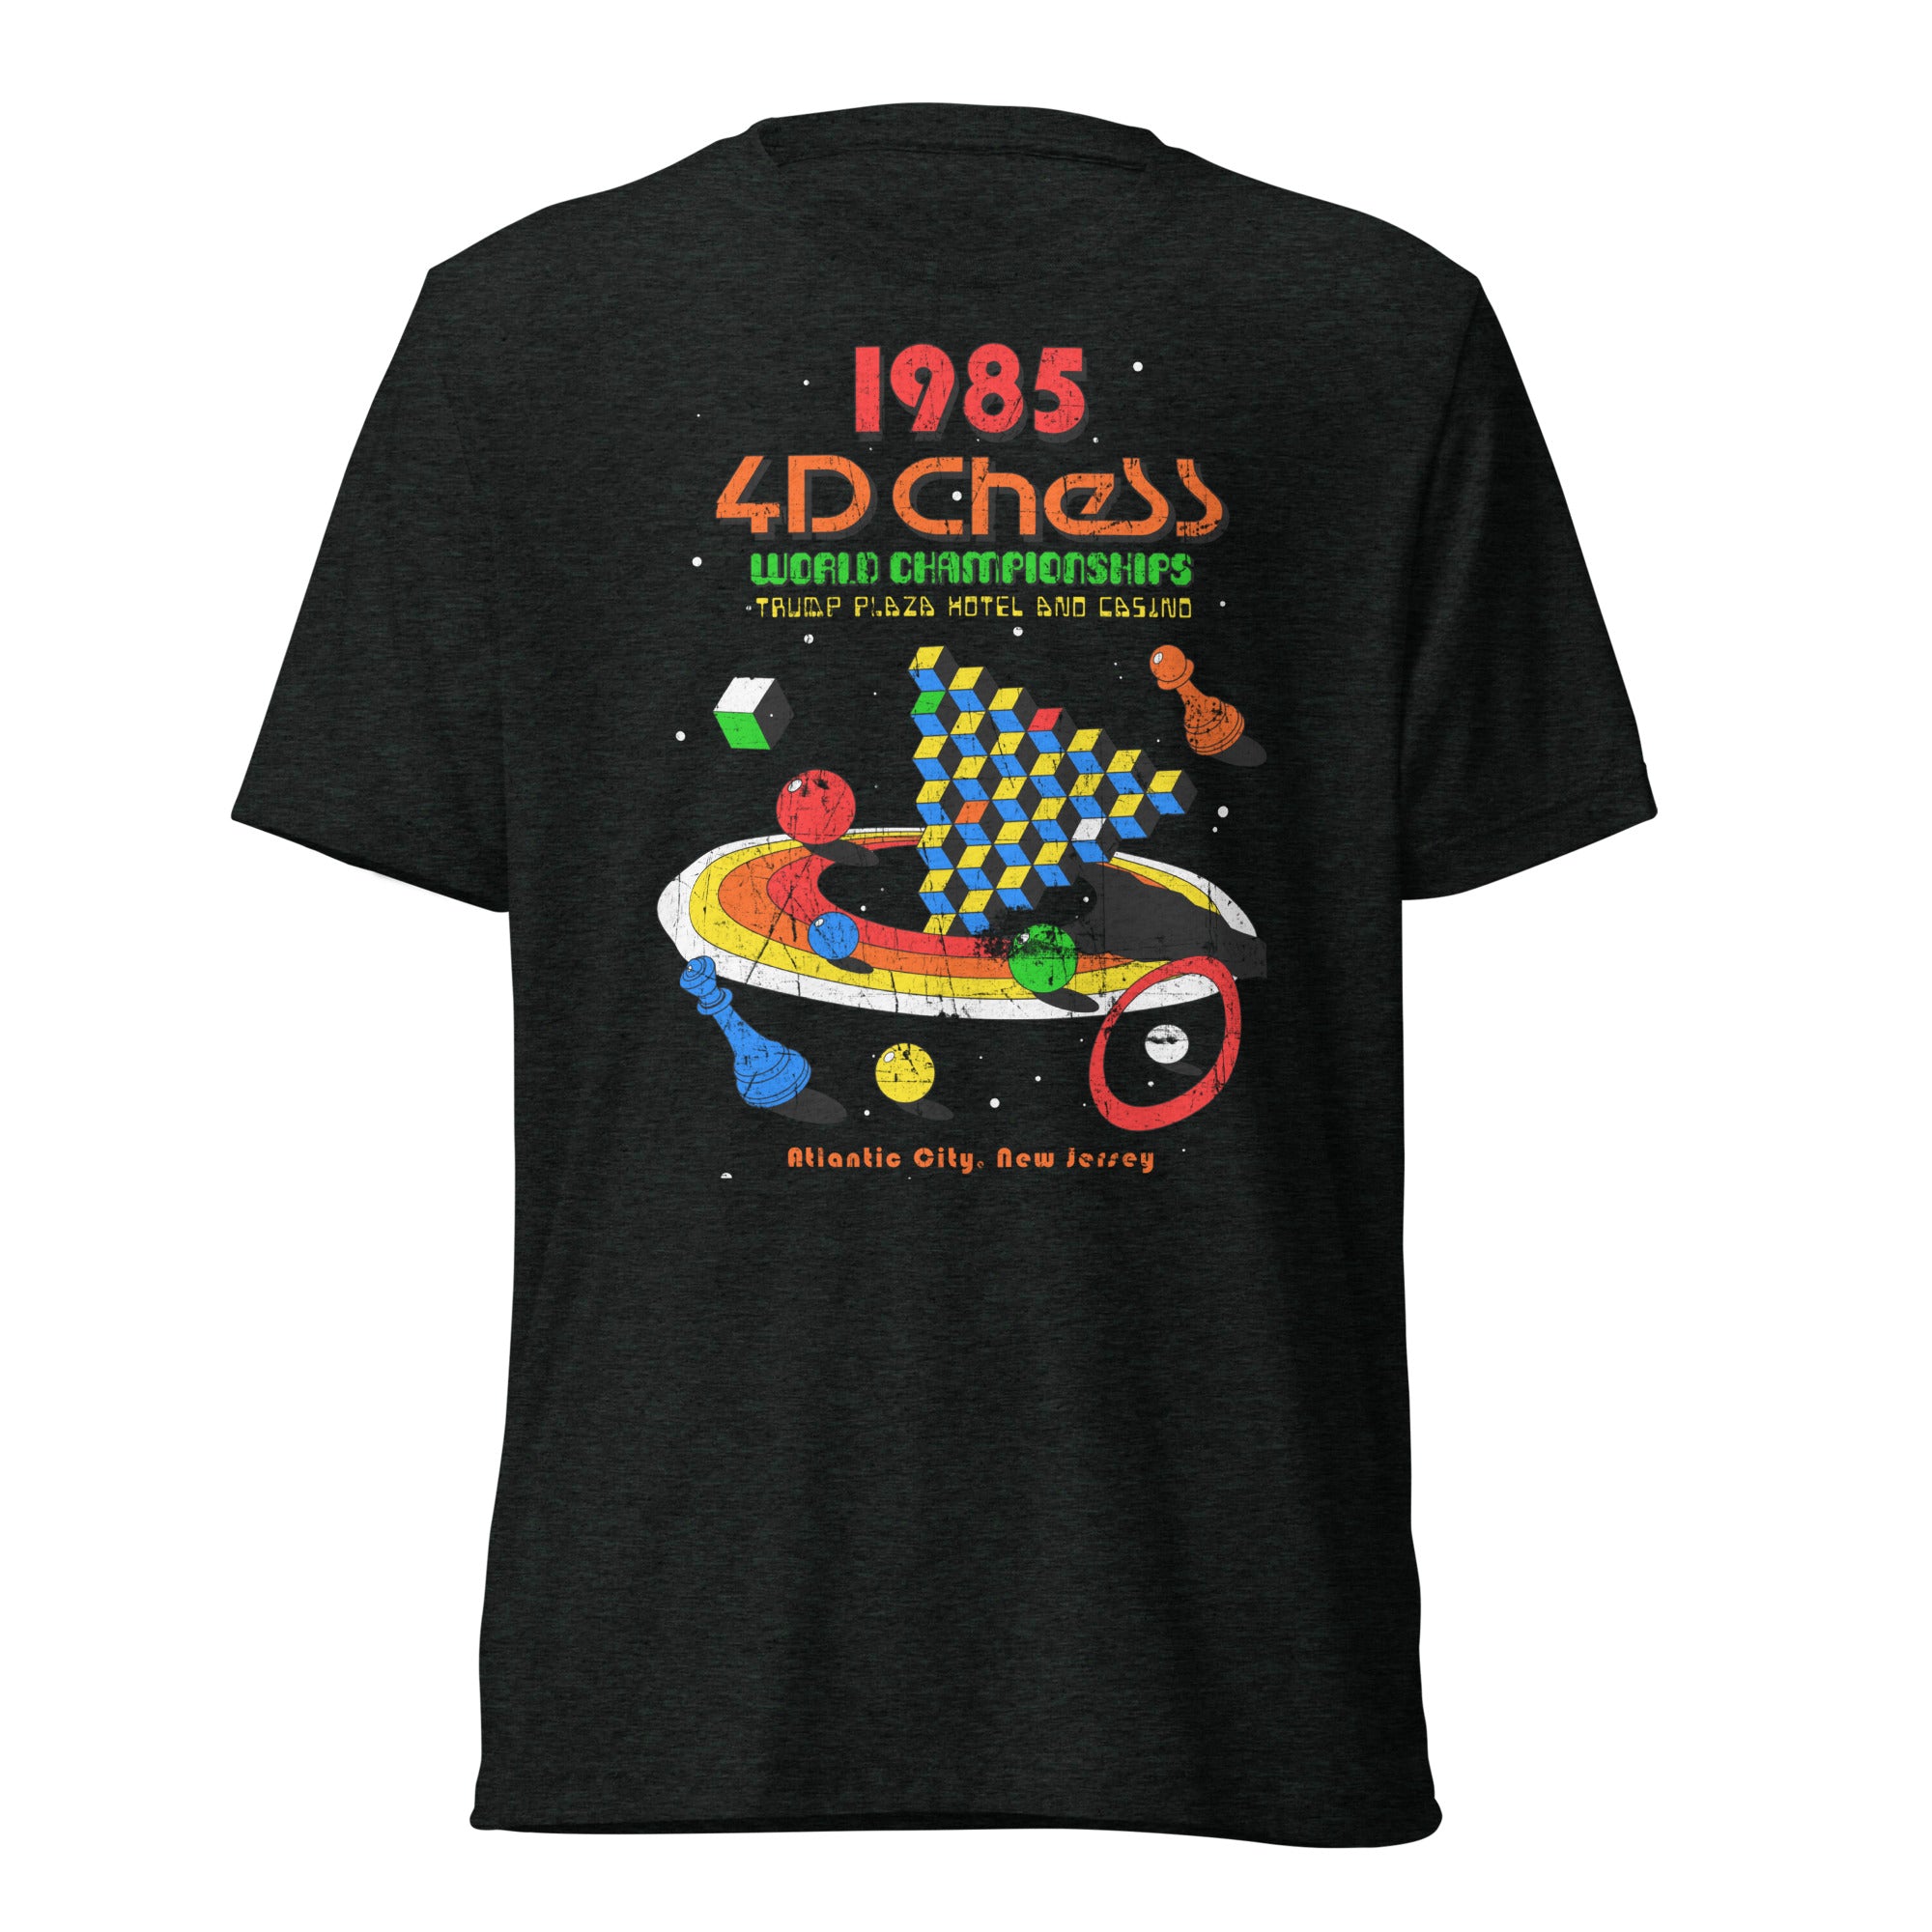 1985 4D Chess Championship Tri-Blend Track Shirt